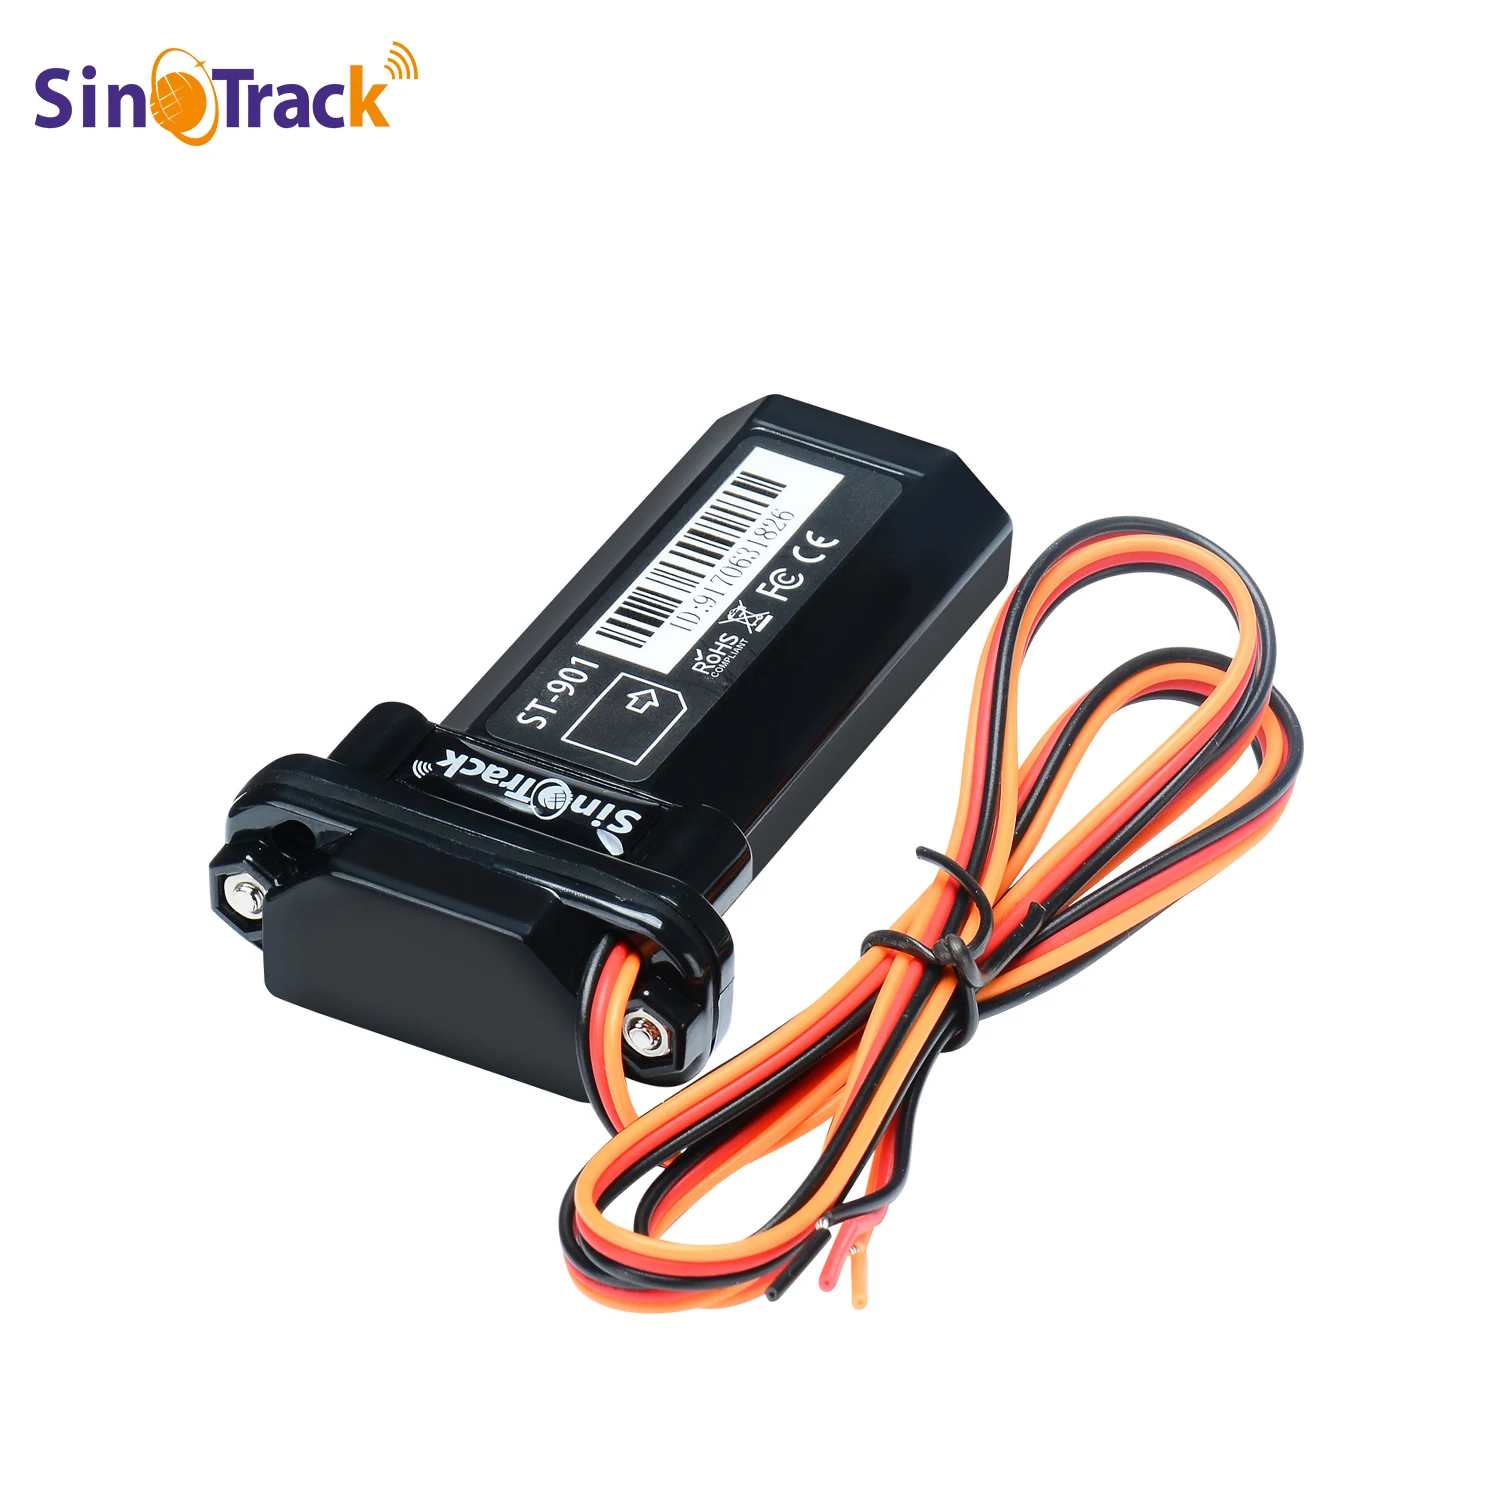 SinoTrack Mini Étanche un.com Étain Batterie GPS Tracker Dispositif ST-901 901L pour Voiture Moto Véhicule Télécommande Gratuit Web Andrea